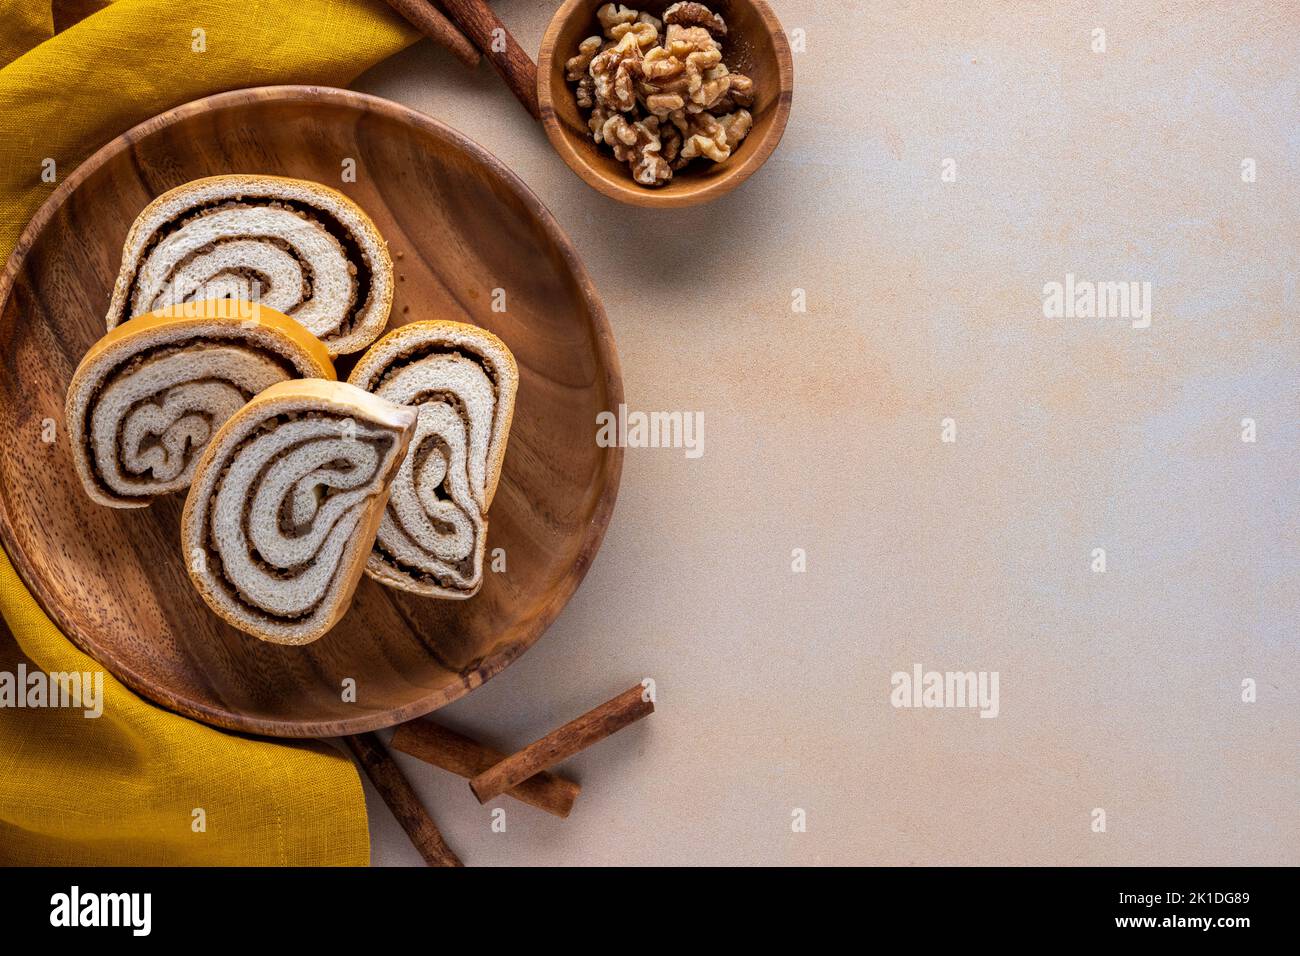 rotolo di noci su un piatto di legno con ciotola piccola di noci cannella bastoncini e tovagliolo su uno sfondo testurizzato Foto Stock